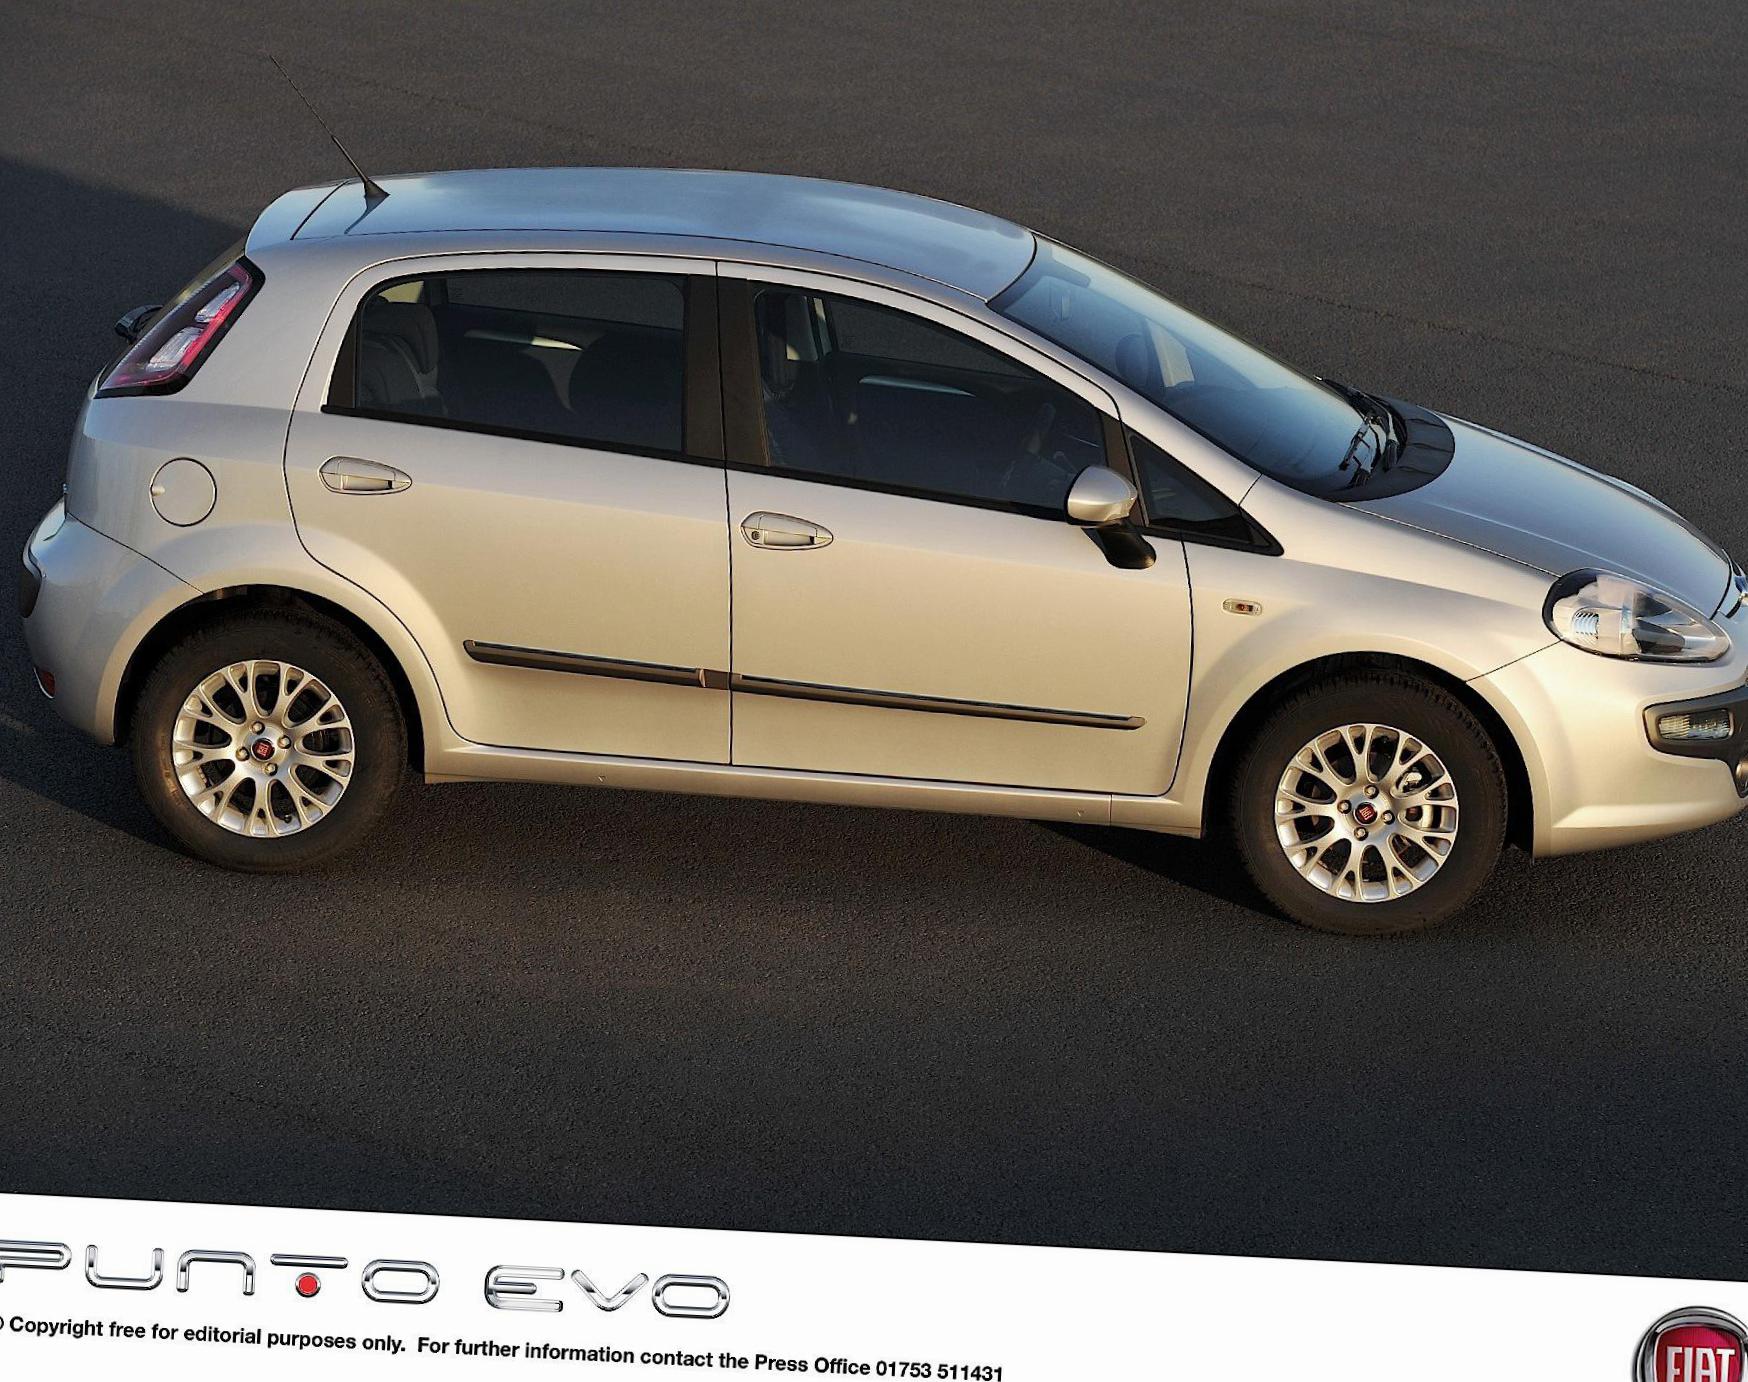 Fiat Punto Evo 5 doors used 2015